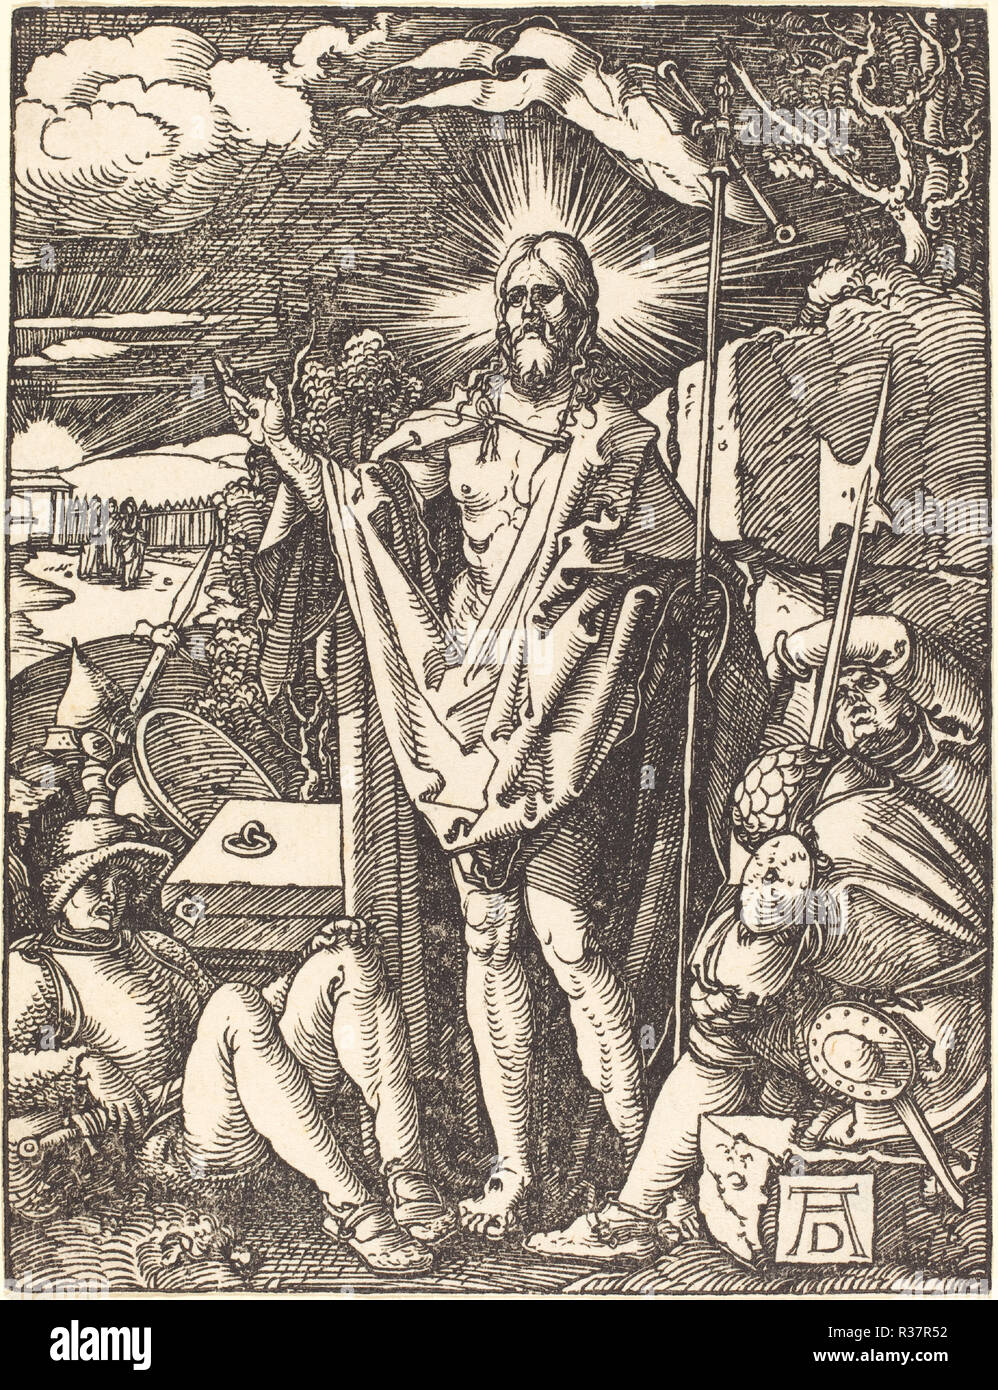 La Résurrection. En date du : probablement c. 1509/1510. Technique : gravure sur bois. Musée : National Gallery of Art, Washington DC. Auteur : Dürer, Albrecht. ALBRECHT DUERER. Banque D'Images